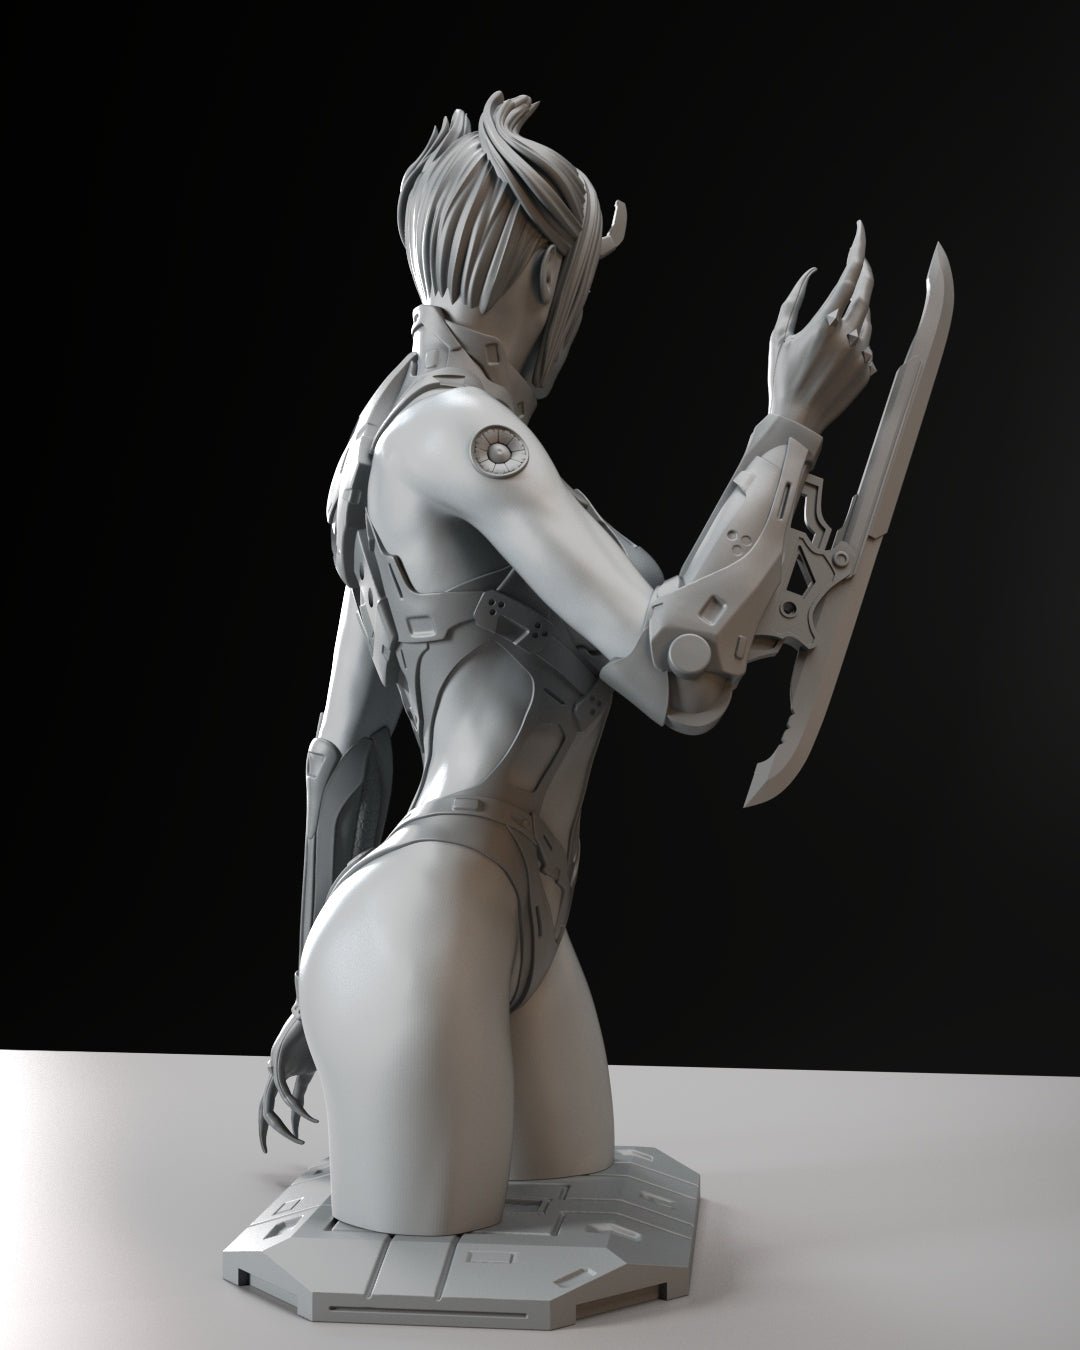 Nakay NSFW BUST | 3D Printed | Fun Art | Figurine by Gsculpt Art